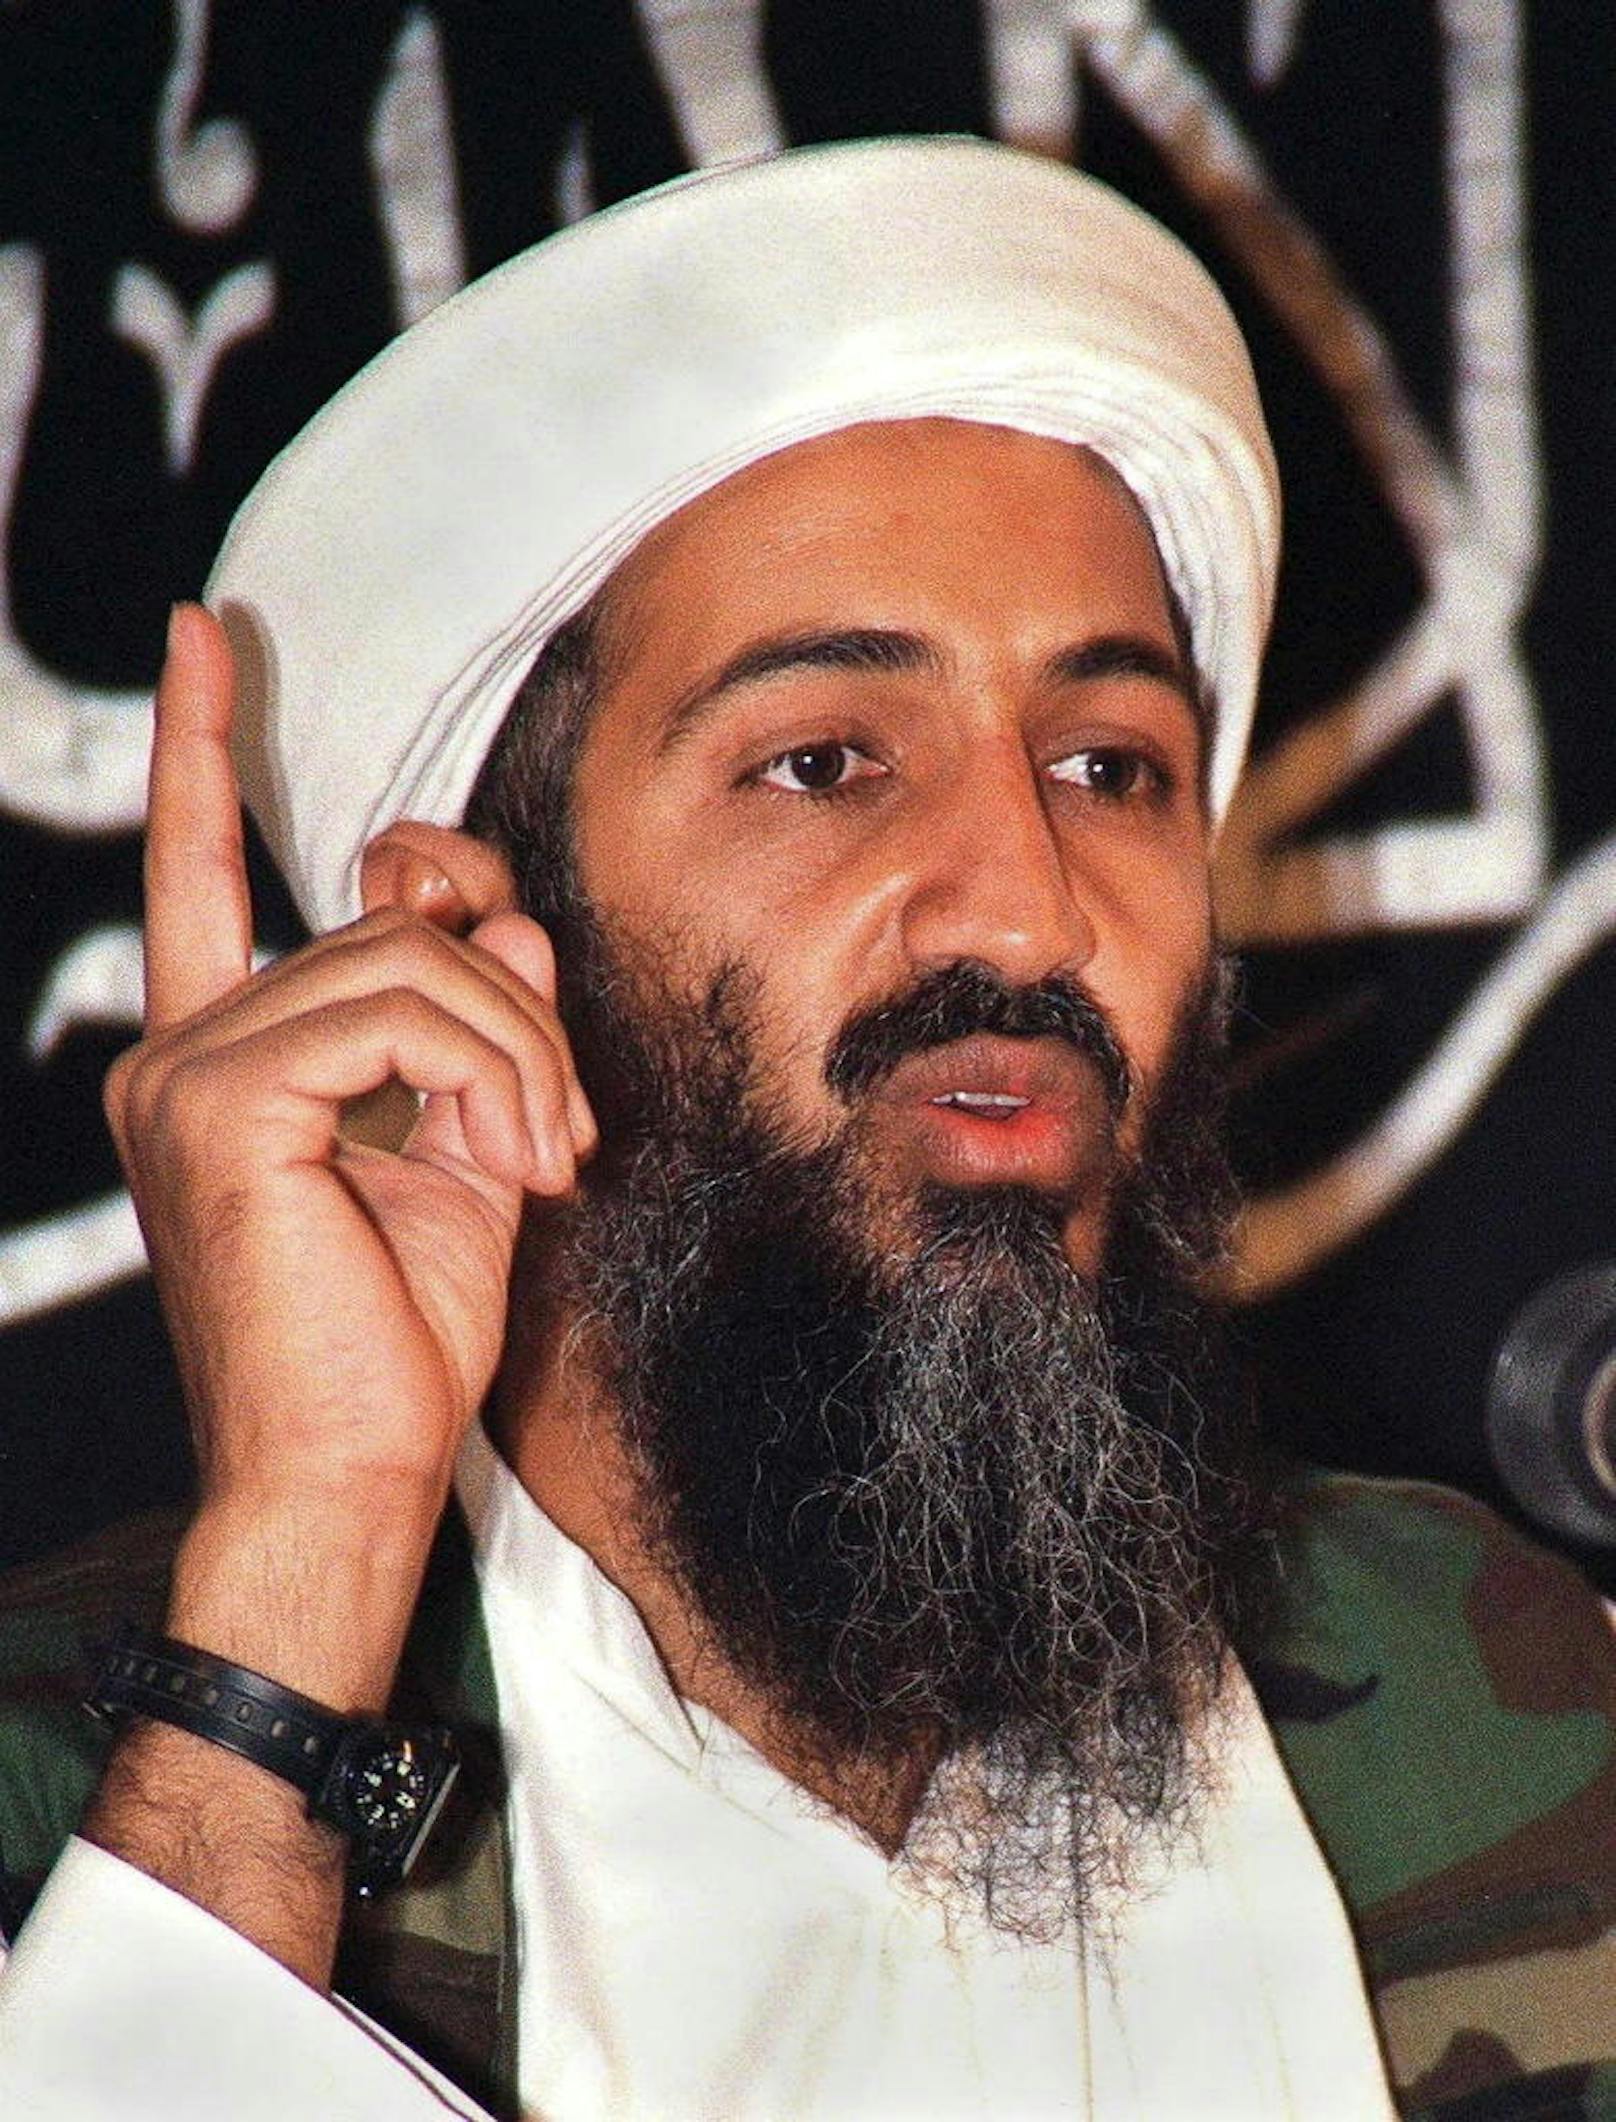 Hamza bin Laden ist einer der Söhne des vom US-Militär getöteten Al-Qaida-Anführers Osama bin Laden. Er gilt als Mastermind hinter den Anschlägen vom 11. September 2001.